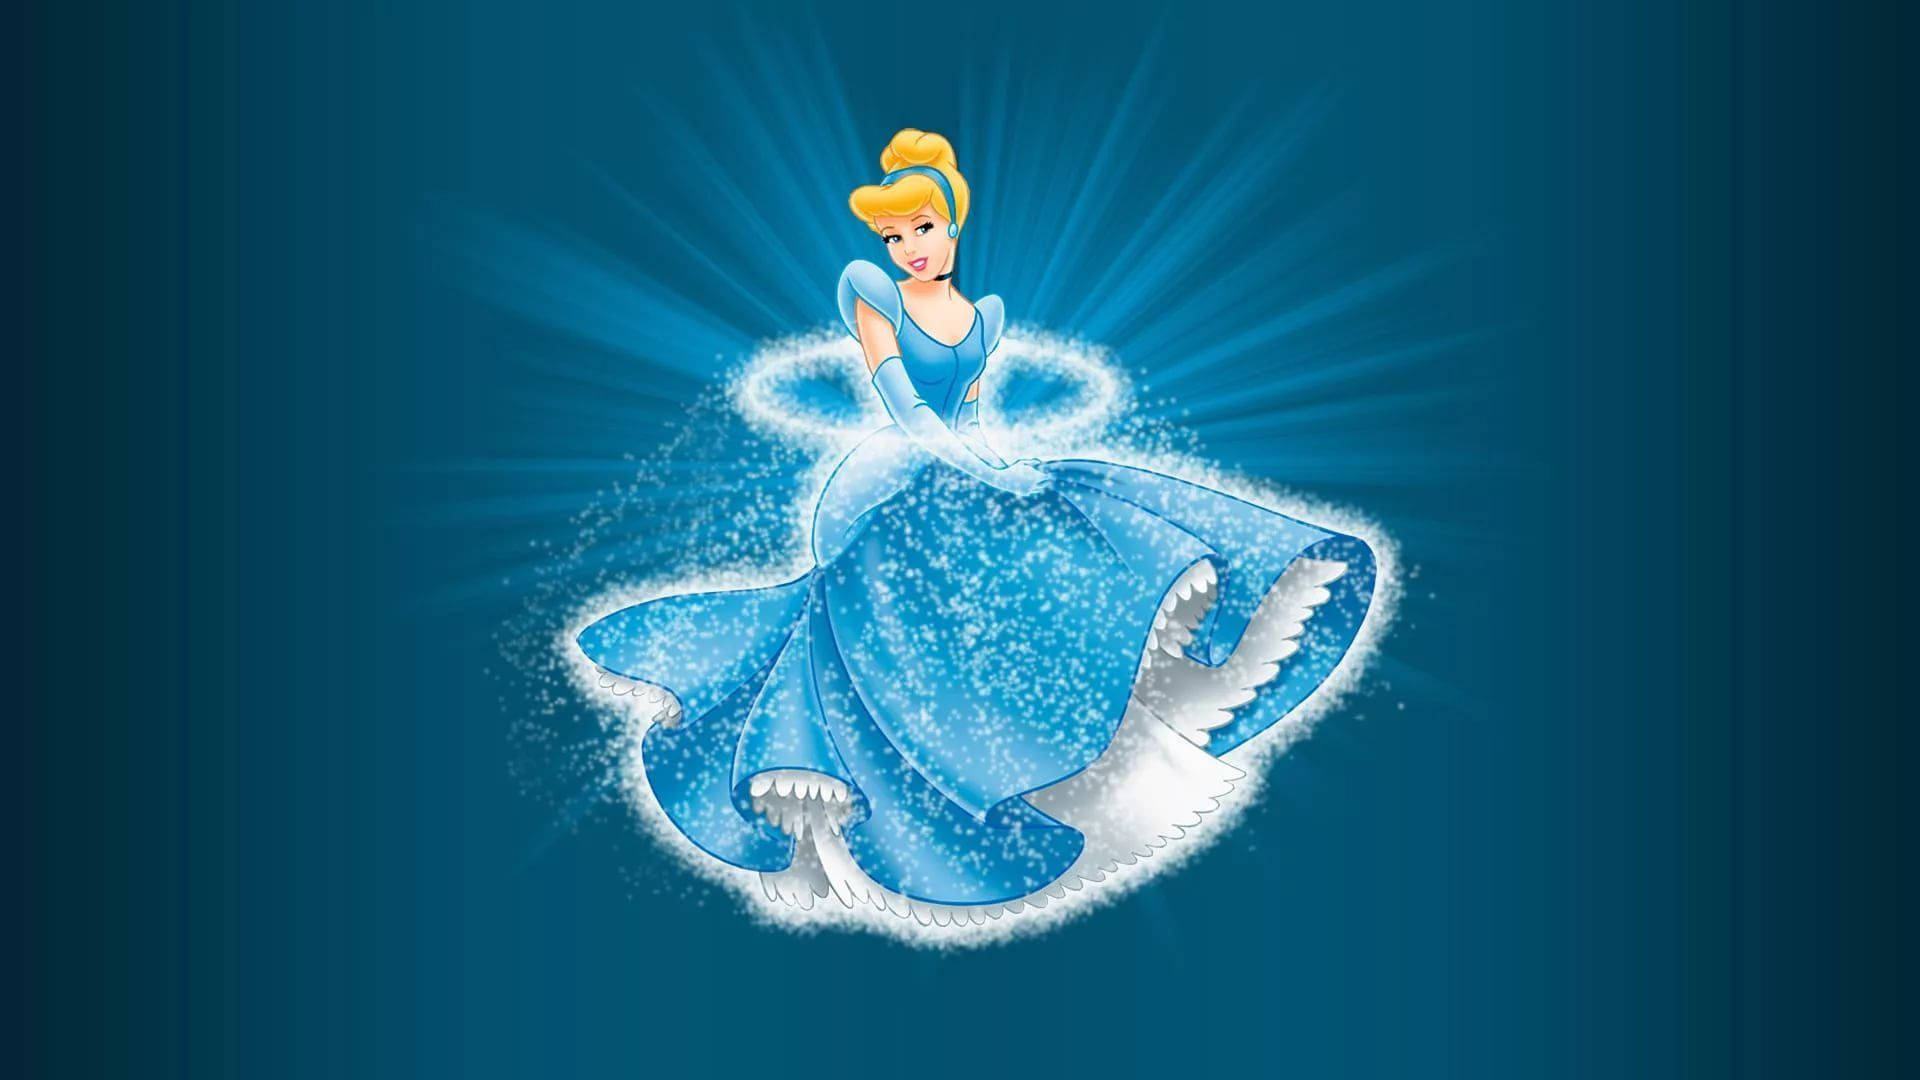 Cinderella Background